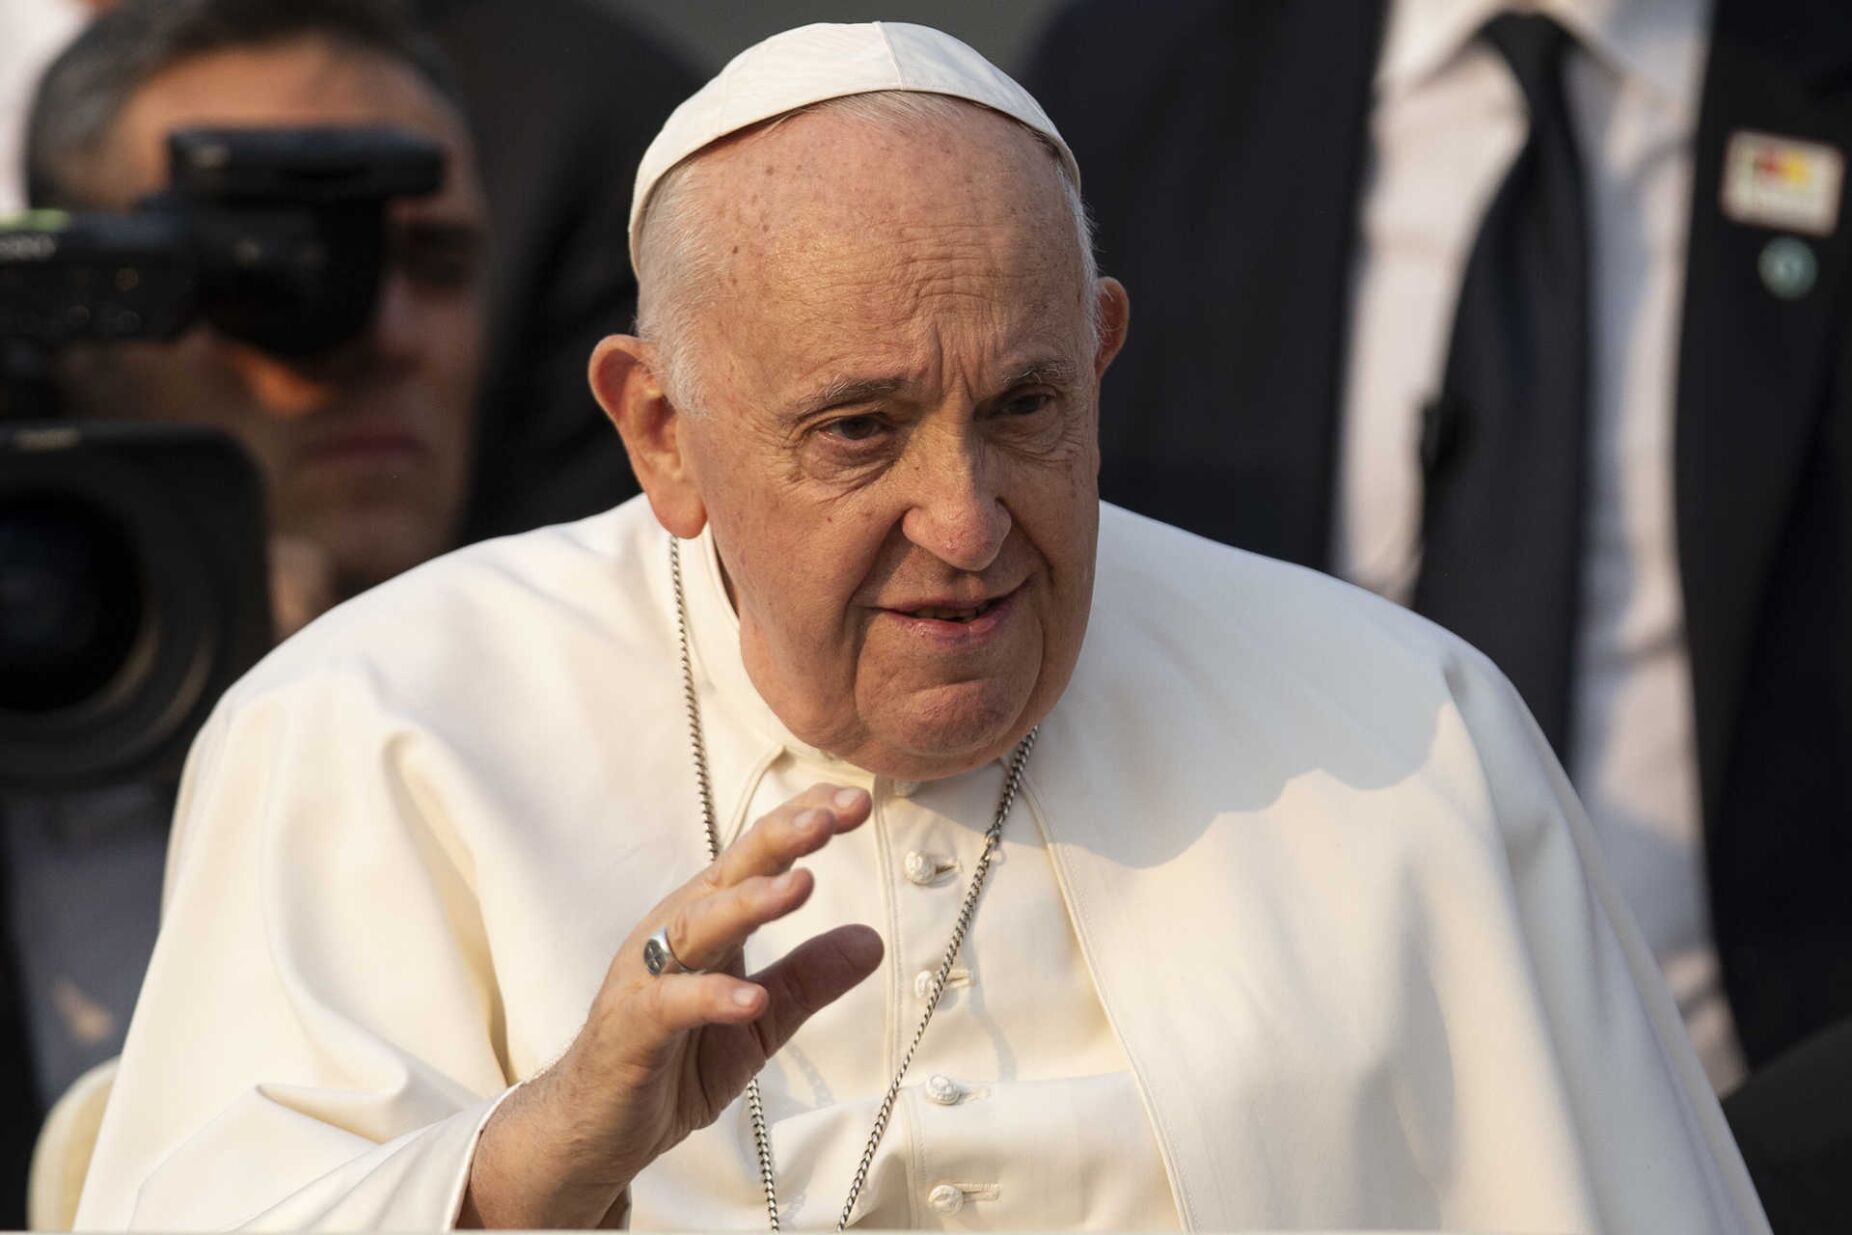 Il Sismografo: Stati Uniti Em decisão muito rara, Papa demite